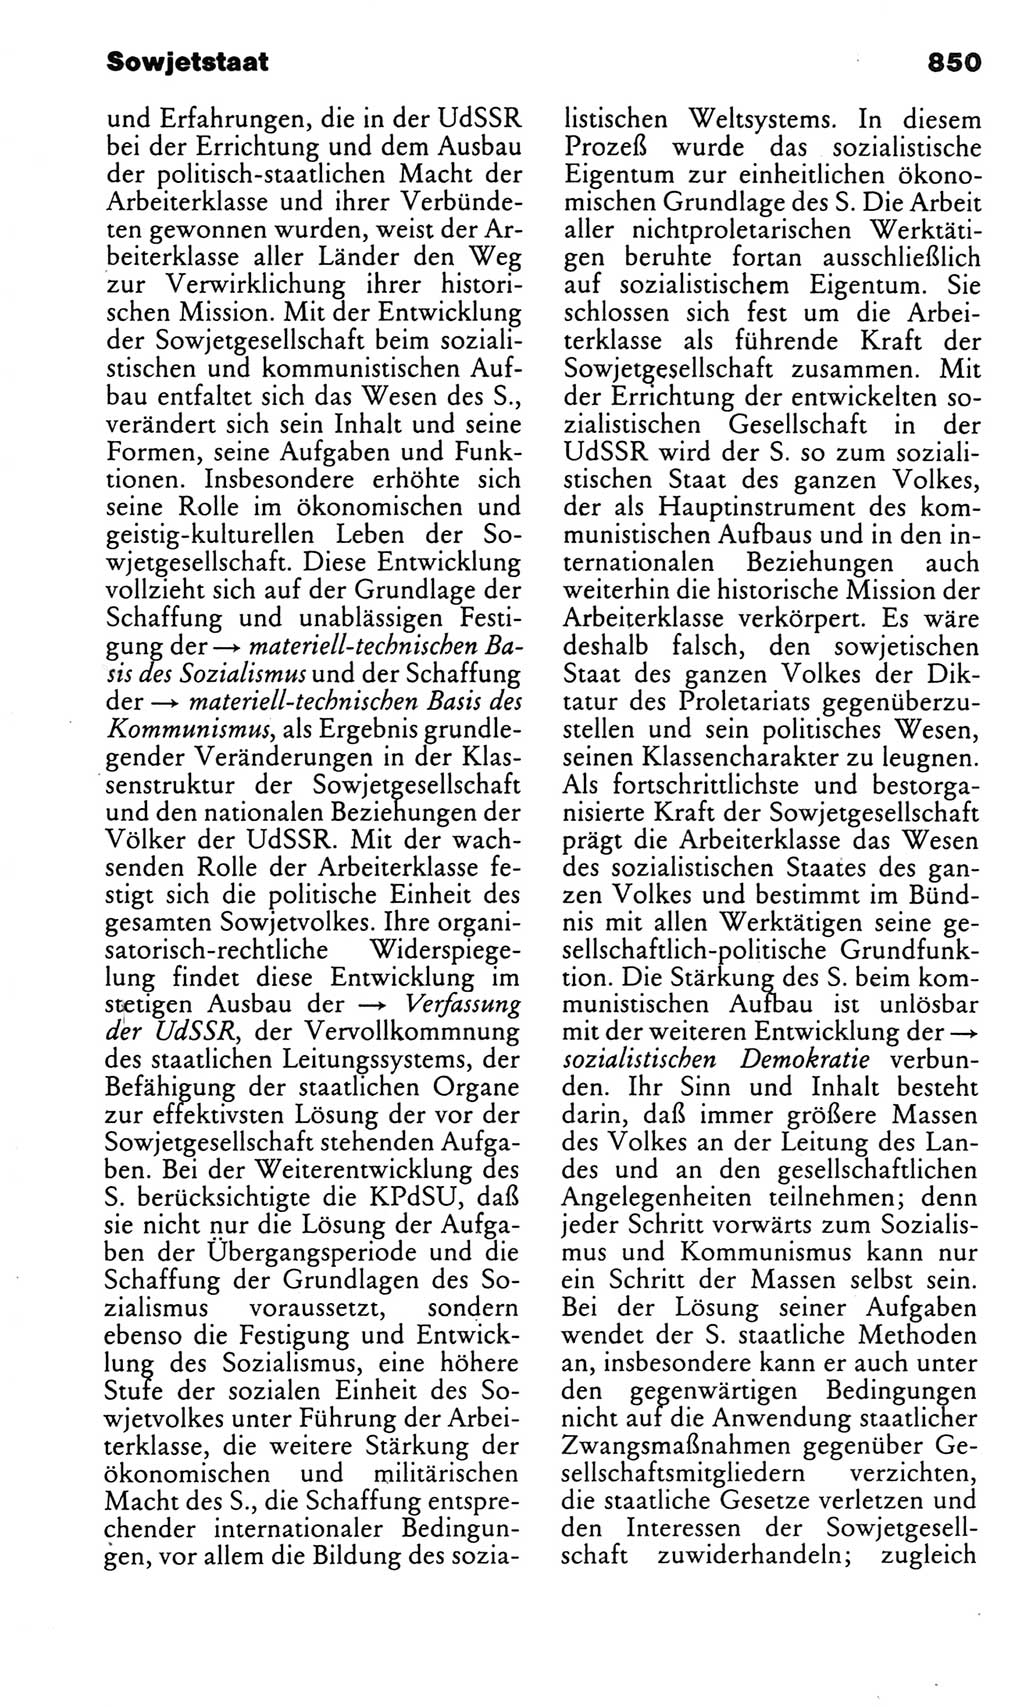 Kleines politisches Wörterbuch [Deutsche Demokratische Republik (DDR)] 1983, Seite 850 (Kl. pol. Wb. DDR 1983, S. 850)